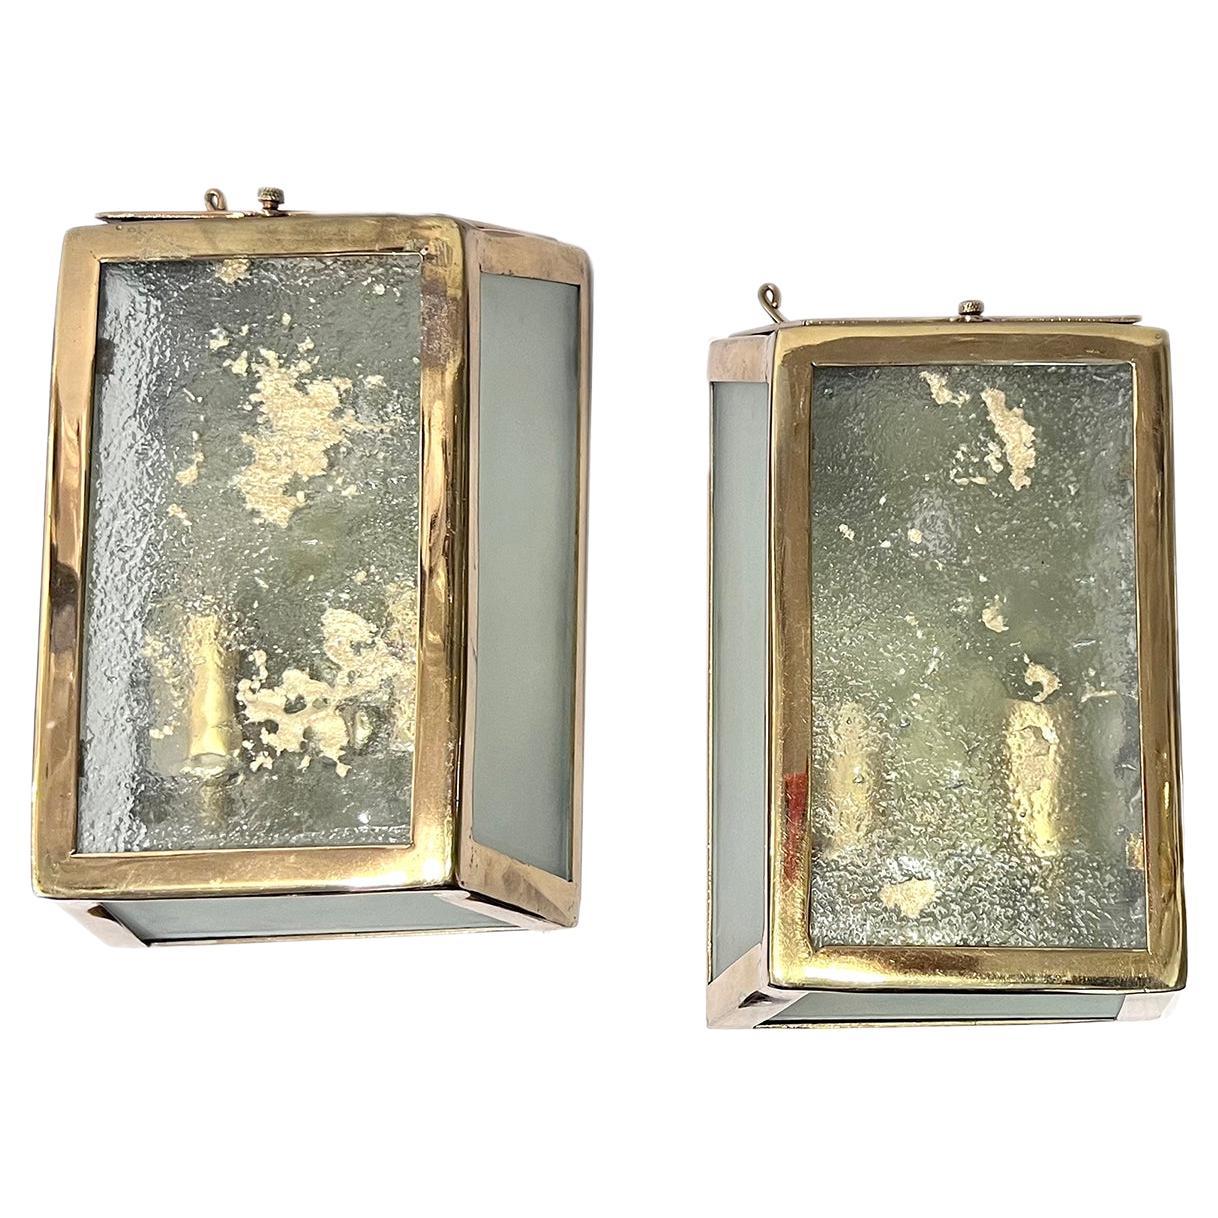 Paar französische Kunstglaskonsolen mit 2 Innenleuchten, circa 1950er Jahre.

Abmessungen:
Höhe: 9,5